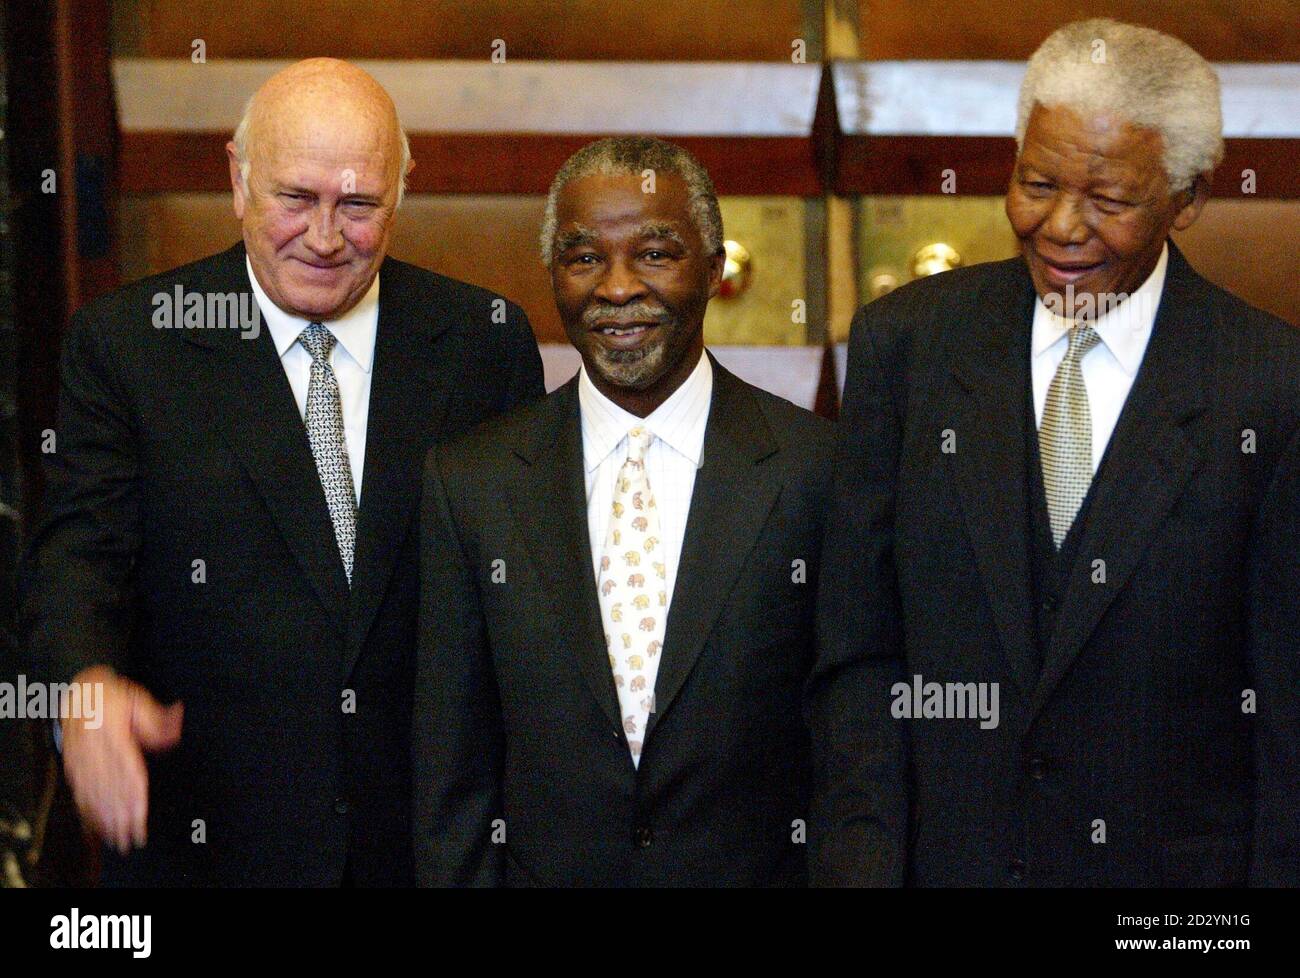 El Presidente Thabo Mbeki (C) y los ex Presidentes FW de Klerk (L) y Nelson Mandela (R) posan para fotógrafos fuera del Parlamento en Ciudad del Cabo, después de la elección de Mbeki como Presidente en esta foto tomada el 10 de mayo de 2004. El partido gobernante de Sudáfrica dijo el 20 de septiembre de 2008 que había decidido recordar al presidente Thabo Mbeki antes de que terminara su mandato el año próximo y que se había comprometido a aceptar la medida y a dejar de lado voluntariamente. La medida sigue al despido de cargos de corrupción la semana pasada contra Jacob Zuma, despedido por Mbeki como vicepresidente del país en 2005. Foto tomada el 10 de mayo de 2004. Foto de stock